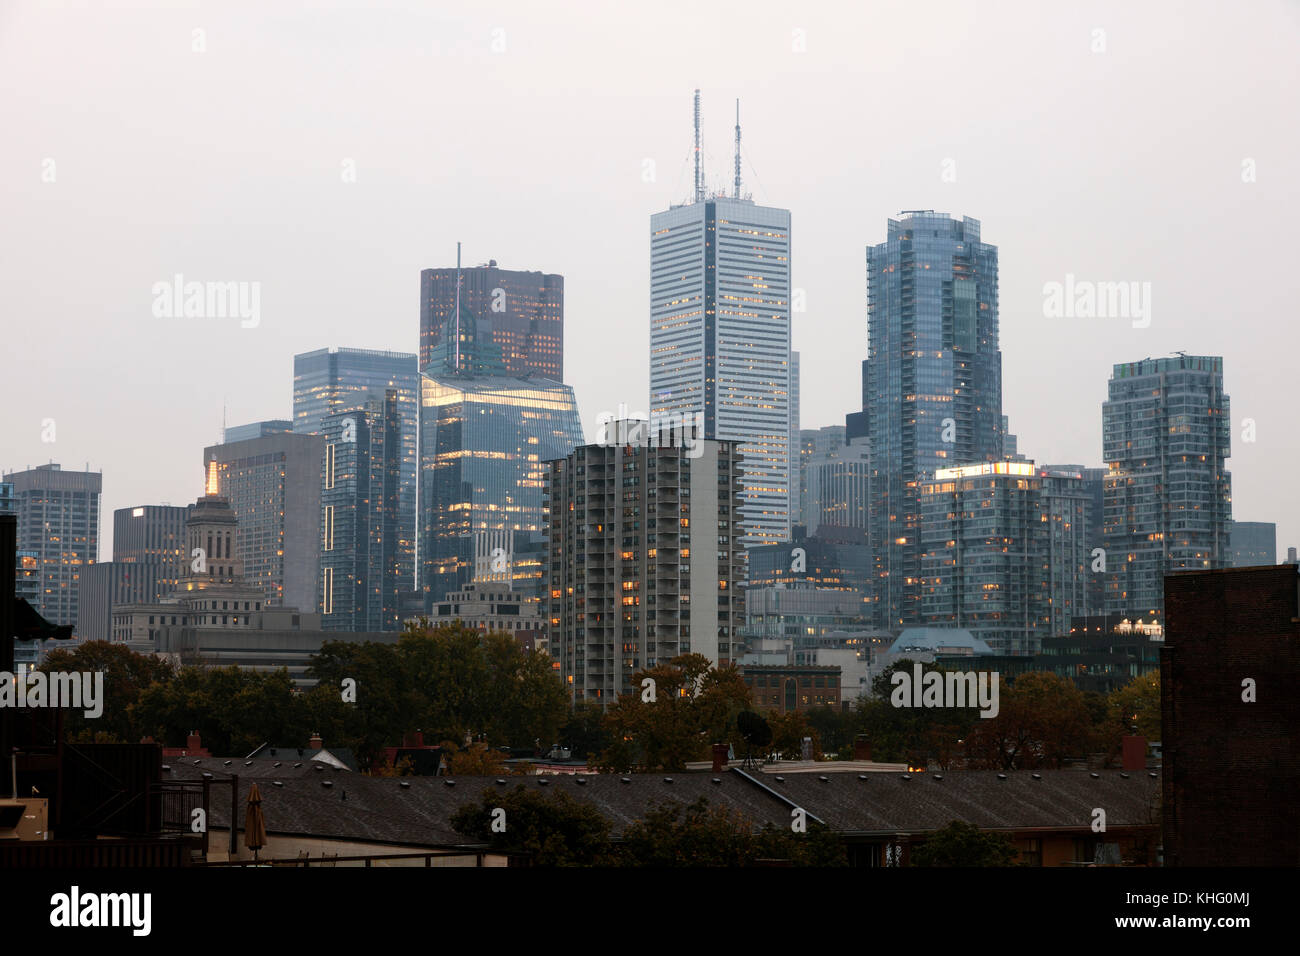 Les tours d'habitation de Toronto centre-ville illuminée au crépuscule. province de l'Ontario, canada Banque D'Images